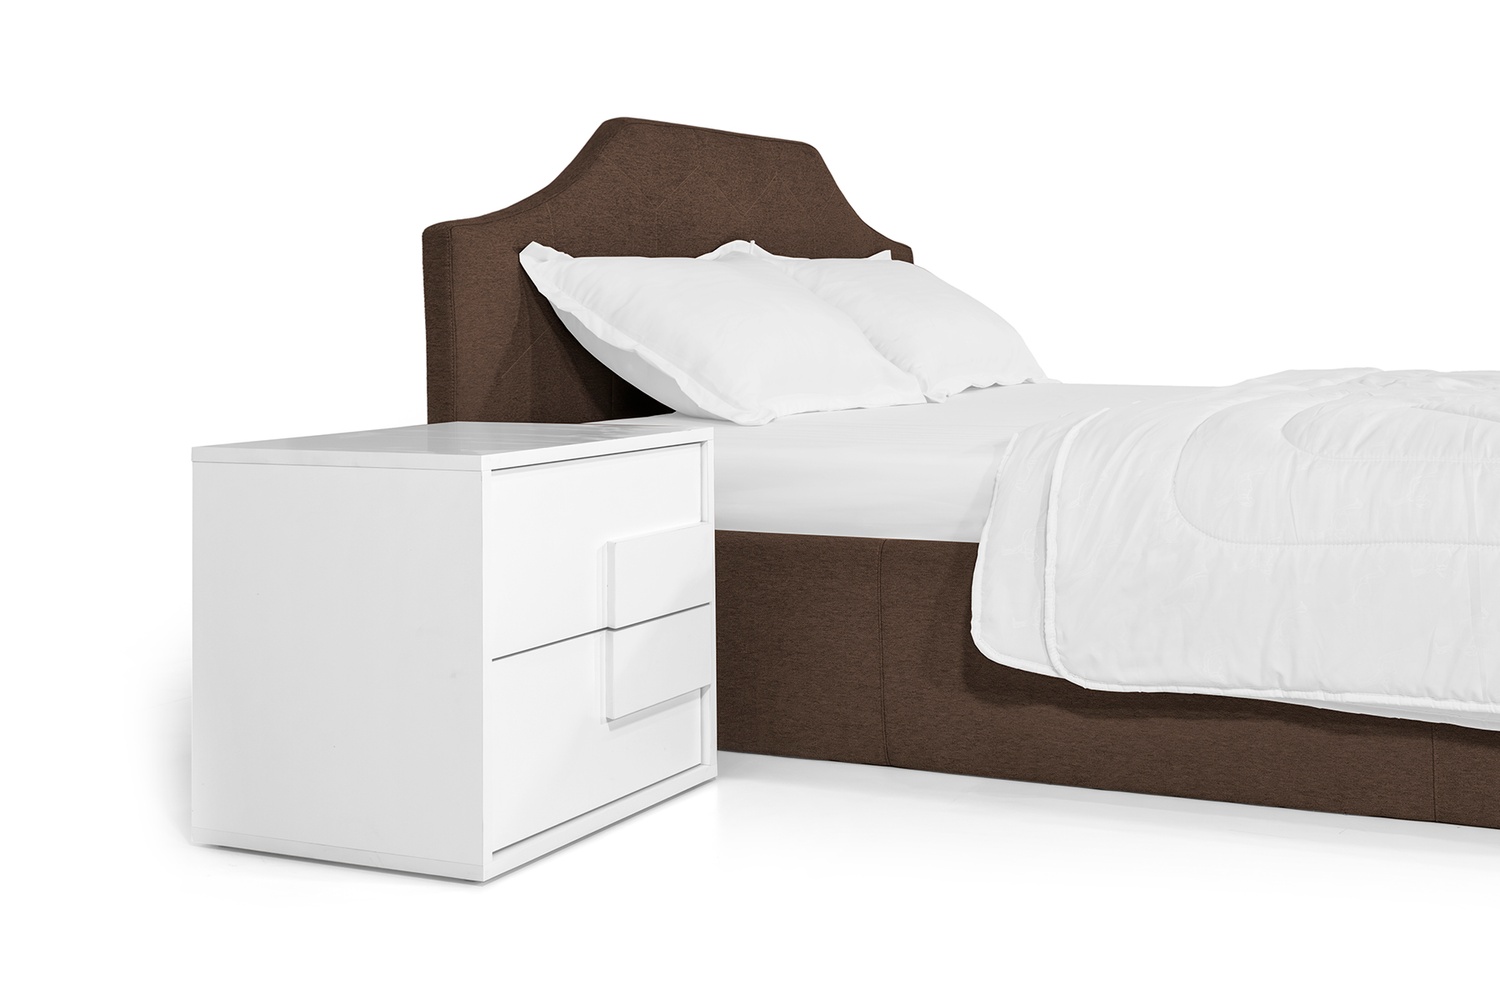 Кровать Моника 160х200 (Коричневый, ламели, матрас, ниша) lmnk160x200kor фото